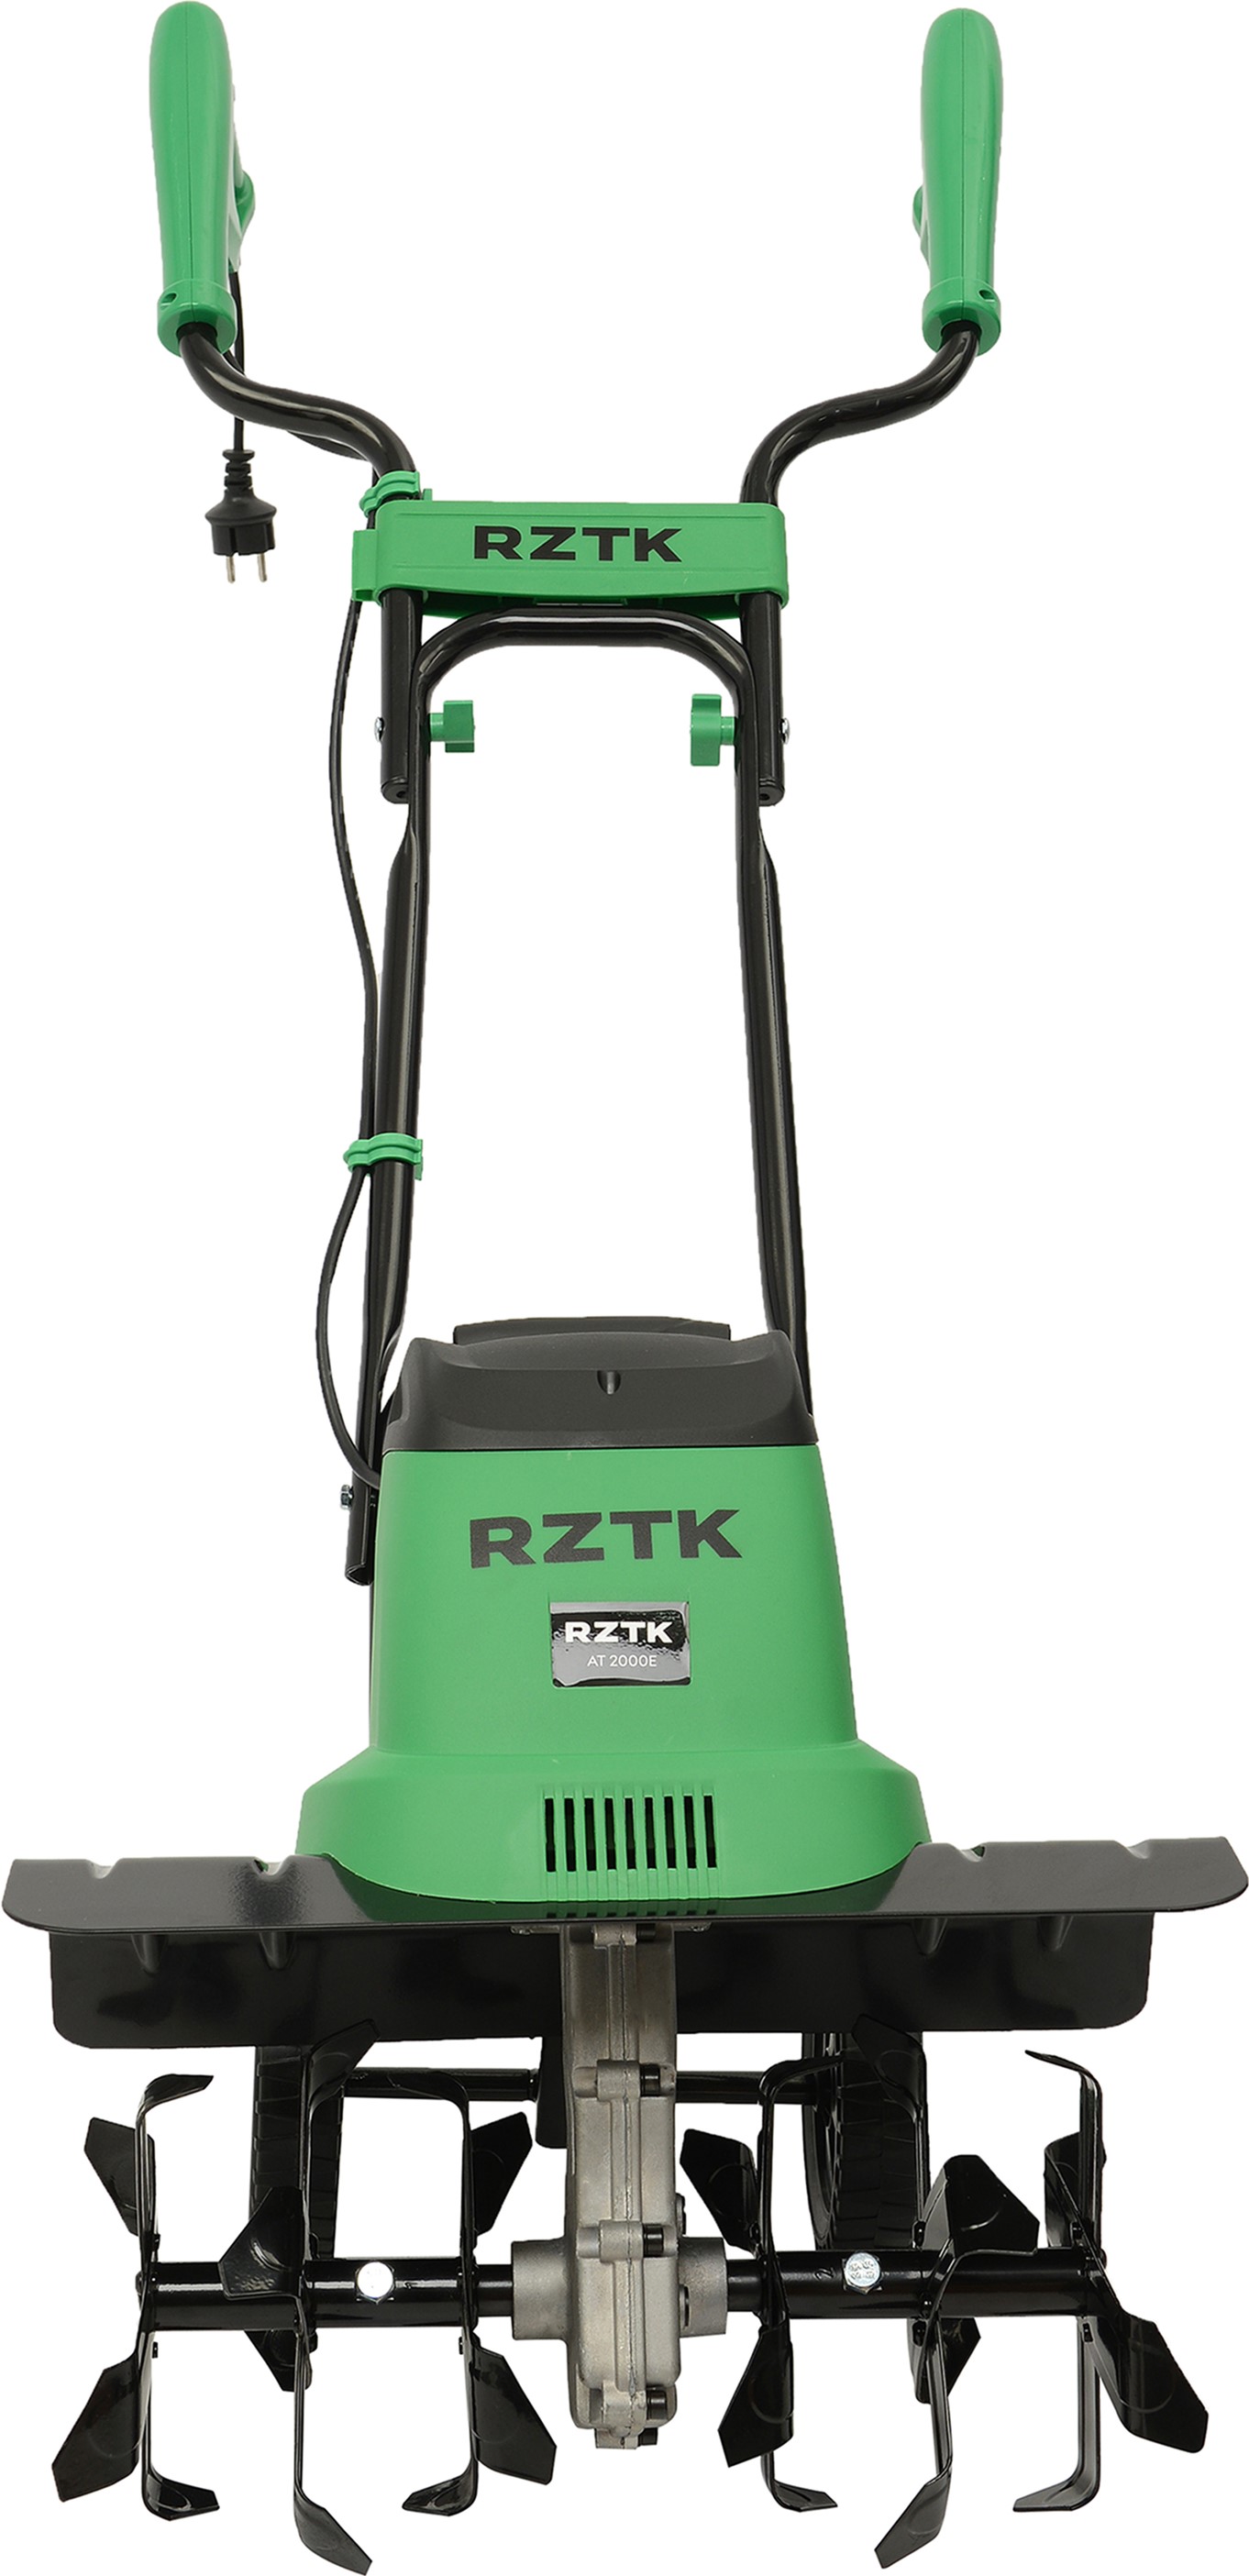 Культиватор електричний RZTK AT 2000E – аксесуари | ROZETKA